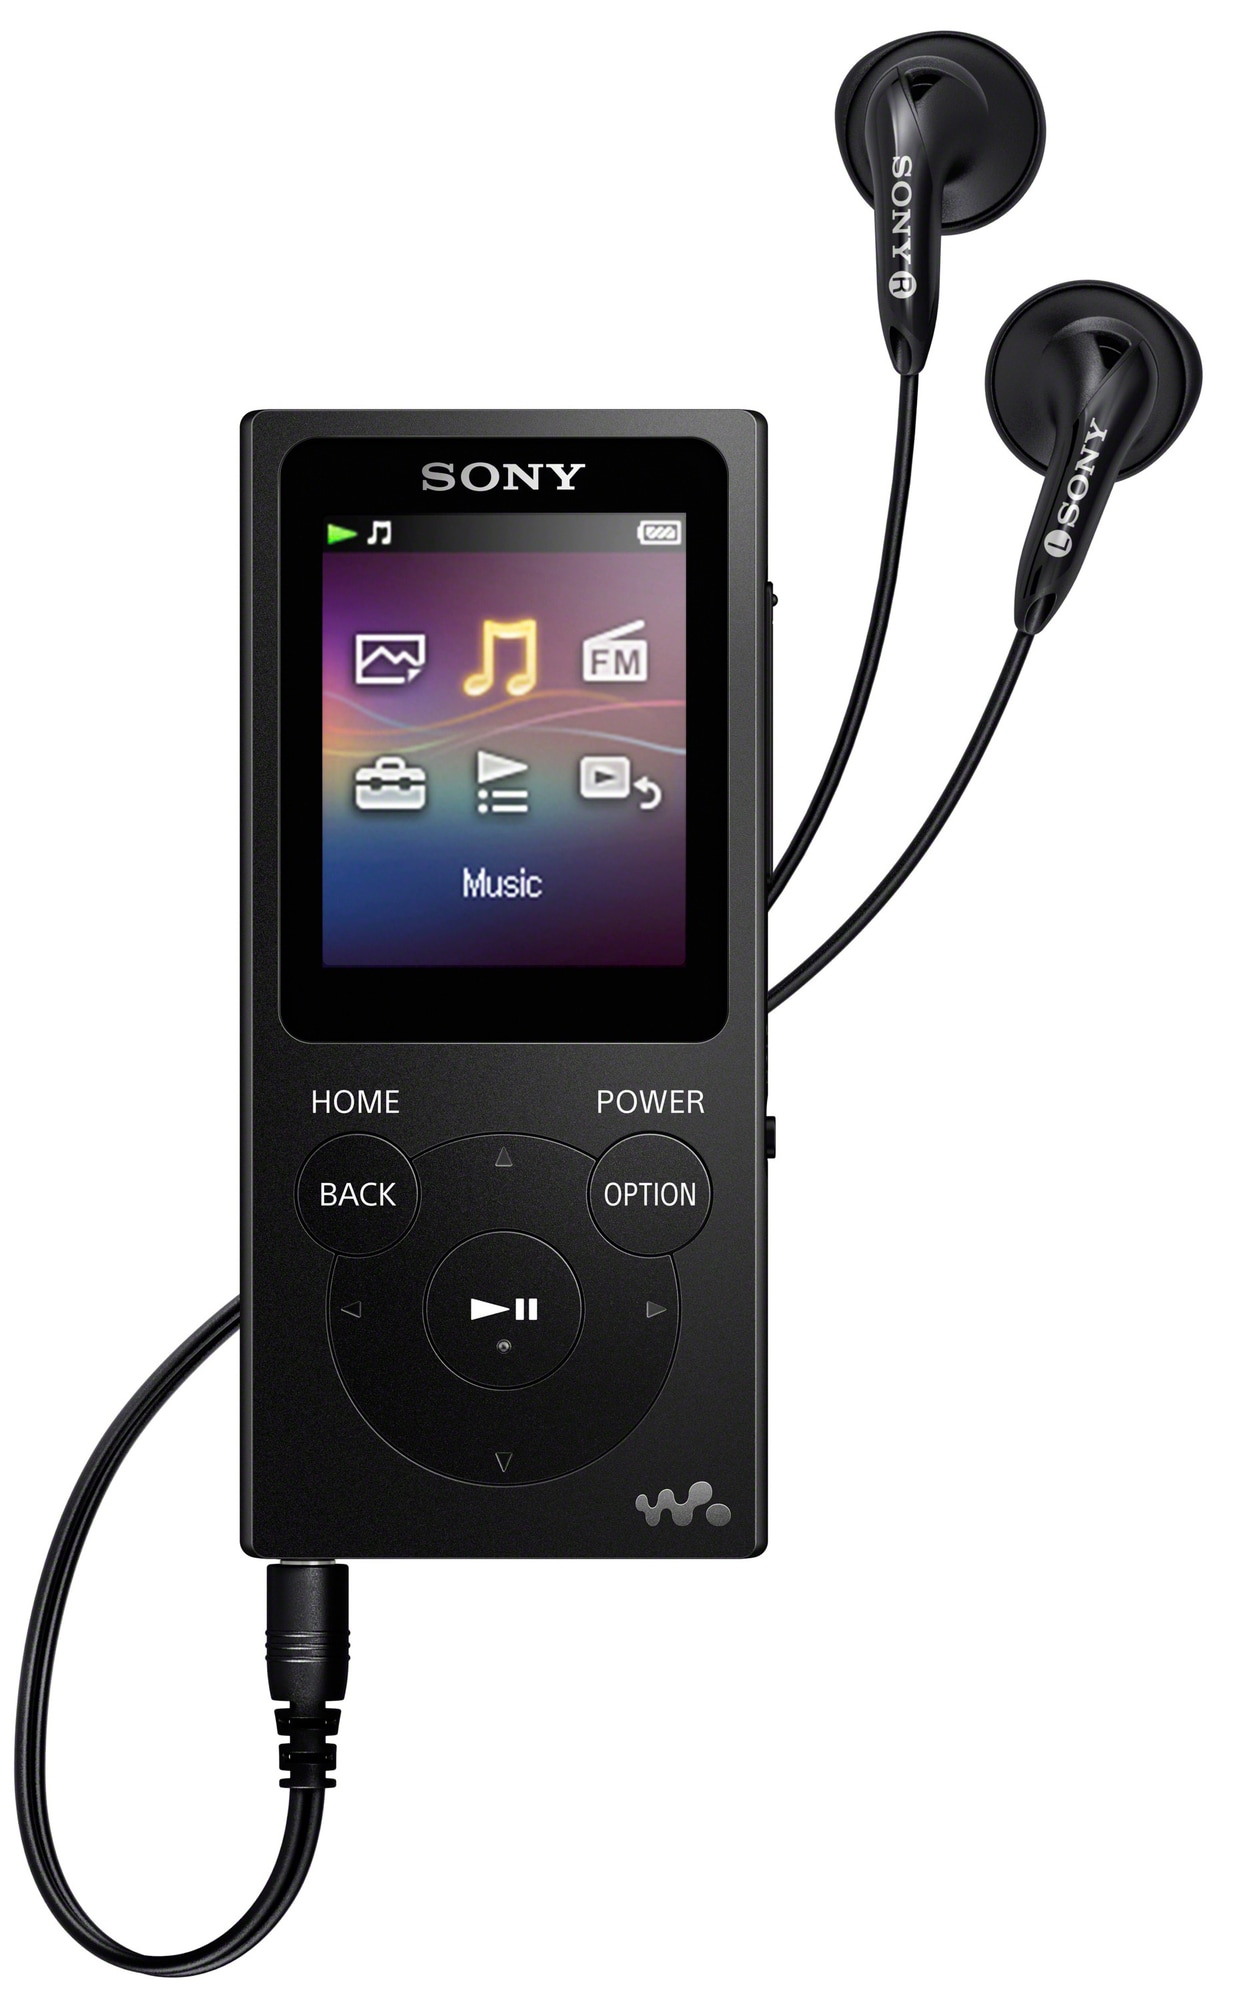 Køb en billig iPod eller MP3-afspiller her - Elgiganten